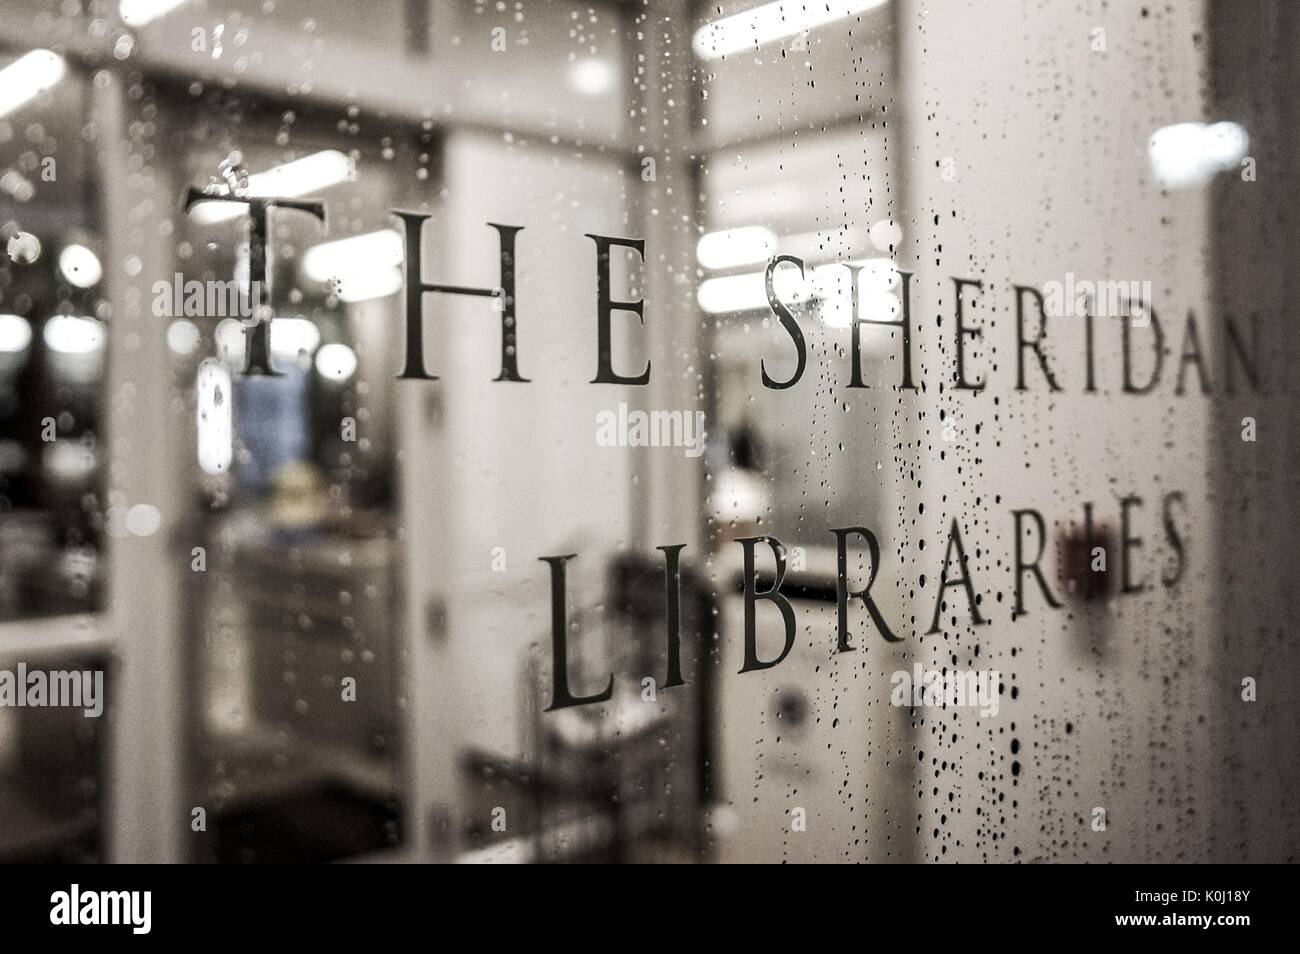 Ein Schild mit der Aufschrift "Die Sheridan Bibliotheken" in Regentropfen, 2016 abgedeckt. Mit freundlicher Genehmigung von Eric Chen. Stockfoto